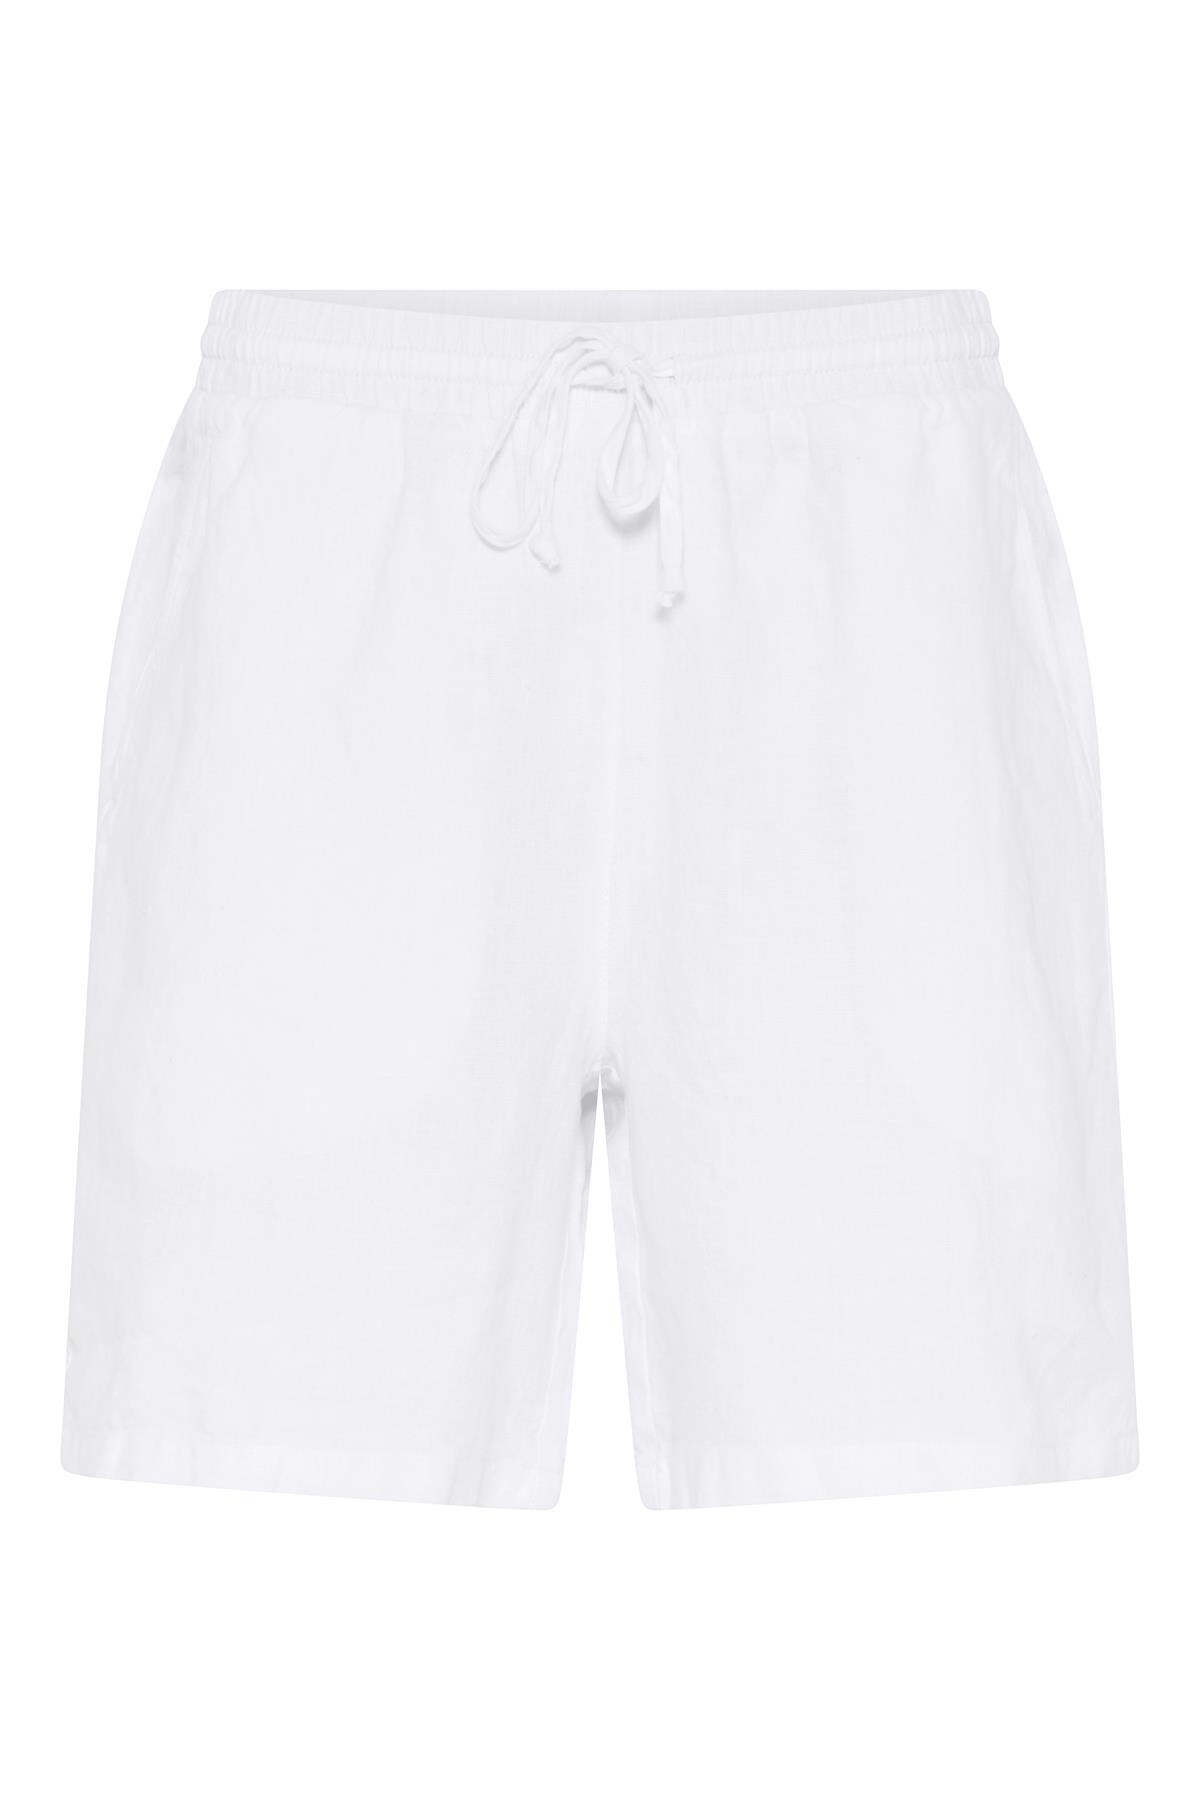 7: In Front Lino Shorts, Farve: Hvid, Størrelse: XL, Dame